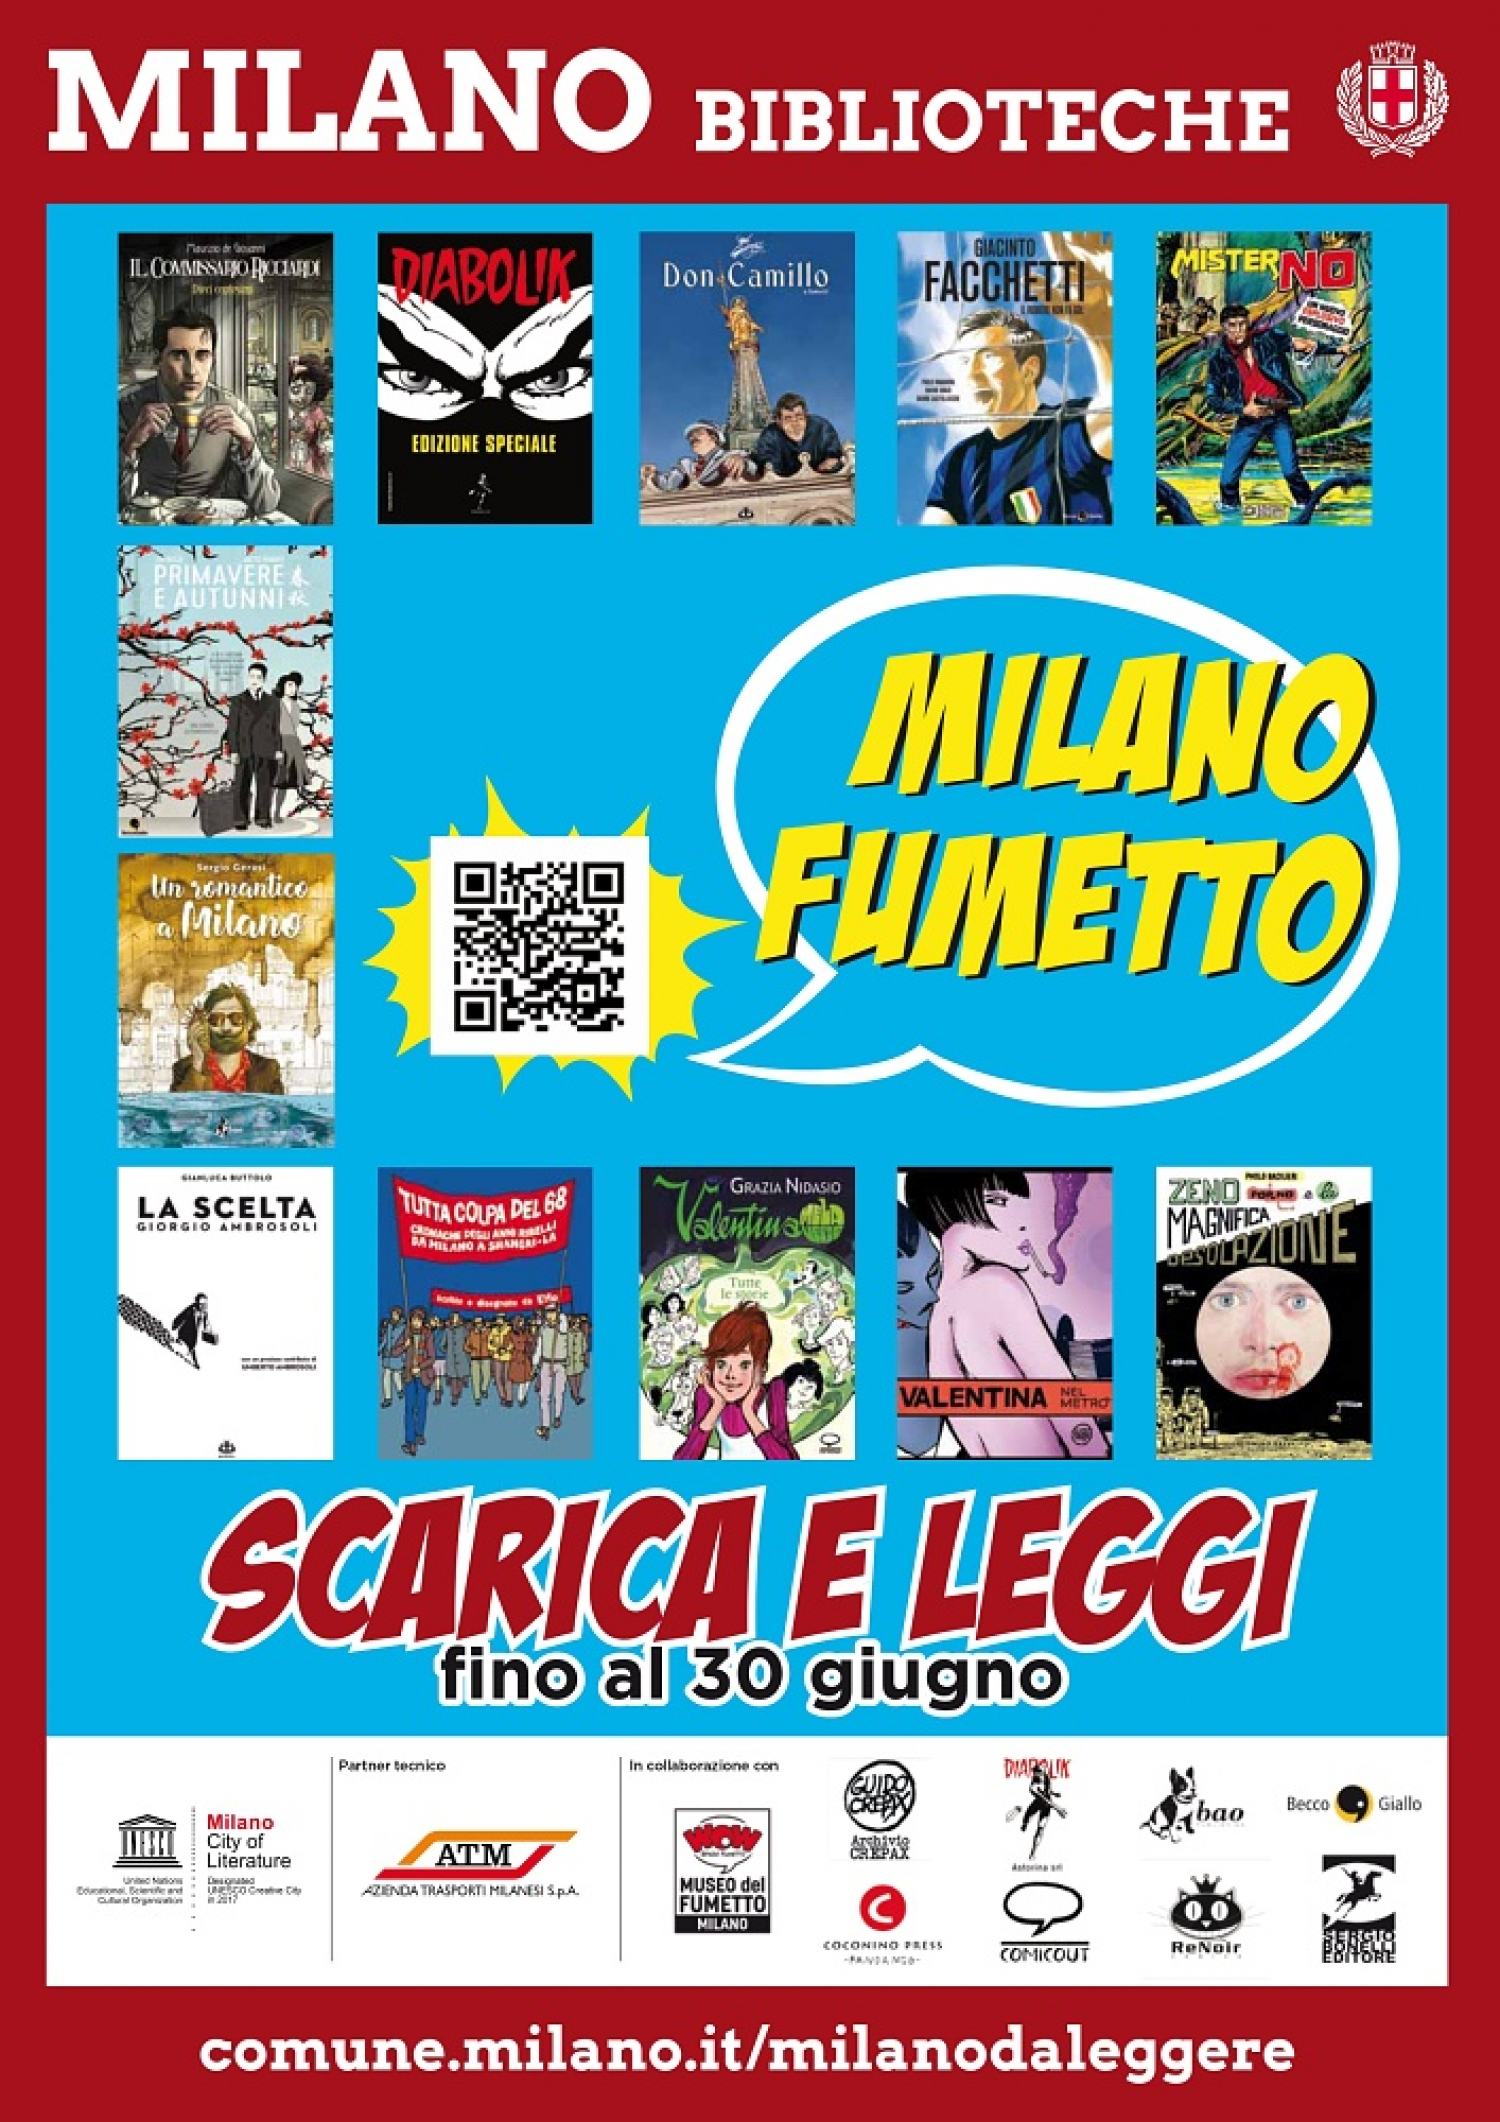 <p><strong>Il <a target="_blank" href="https://www.comune.milano.it/wps/portal/ist/it">Comune di Milano</a> - in collaborazione con <a target="_blank" href="https://www.atm.it/it/">ATM</a> - lancia l&rsquo;edizione 2019 di <a target="_blank" href="https://milano.biblioteche.it/milanodaleggere">Milano da Leggere</a>, l&rsquo;iniziativa delle Biblioteche di Milano per disseminare occasioni di lettura in modo semplice e gratuito.</strong> <strong>Da venerd&igrave; 19 aprile compariranno</strong> infatti in giro per la citt&agrave; - nei mezzanini e nelle carrozze della metropolitana - <strong>i manifesti che invitano a scaricare tramite QR Code i libri presenti nello scaffale virtuale</strong>. La novit&agrave; di questa edizione &egrave; il linguaggio: <strong>per rappresentare Milano si sono scelte le immagini e le parole di fumetti e graphic novel</strong>, omaggiando un genere sempre pi&ugrave; diffuso per raccontare mondi, reali e immaginari. <strong>Milano pu&ograve; essere considerata la &ldquo;citt&agrave; del fumetto&rdquo;</strong> per le numerose case editrici specializzate che vi hanno sede, per la presenza di un museo espressamente dedicato e per la storica scuola del Castello Sforzesco. Ma, per tradizione, Milano da Leggere &egrave; in rapporto con la citt&agrave; soprattutto per le storie che propone e questa edizione non fa eccezione. <strong>Grandi personaggi dei fumetti sono creazioni di indimenticabili artisti milanesi</strong>: Guido Crepax con la sua Valentina, protagonista di surreali incontri nel metr&ograve;, un omaggio dell&rsquo;autore ai grandi maestri del fumetto; le sorelle Angela e Luciana Giussani, creatrici di Diabolik, presentato in edizione speciale con una recente storia inedita a firma di Mario Gomboli e un&rsquo;avventura ambientata proprio a Milano; Grazia Nidasio, autrice della saga di Valentina Mela Verde, adolescente milanese degli anni &#39;70; Guido Nolitta, alias Sergio Bonelli, ideatore di Mister No, di cui si ripropone il primissimo numero del 1975. E <strong>sono di Milano</strong> Giancarlo Ascari, alias Elfo, che ci fa assaporare l&#39;atmosfera che si respirava a Milano nel &lsquo;68; Davide Barzi che firma insieme al giornalista Paolo Maggioni il biopic a fumetti su Giacinto Facchetti ed &egrave; inoltre sceneggiatore delle storie a fumetti di Don Camillo tratte dai racconti originali di Guareschi, composte per l&rsquo;occasione in un&rsquo;antologia di ambientazione milanese; Sergio Gerasi con una storia che dichiara anche il legame sentimentale del protagonista con artisti, poeti e scrittori della Milano del Novecento; Ciaj Rocchi &amp; Matteo Demonte che raccontano le origini dell&#39;immigrazione cinese a Milano negli anni &rsquo;30 e, novit&agrave; interessante, ne offrono la versione anche in lingua cinese. Non solo gli autori, <strong>anche molte delle storie sono a sfondo milanese</strong> e a quelle gi&agrave; citate si aggiungono i graphic novel di Paolo Bacilieri, con un episodio di Zeno Porno a cui Milano fa da scenario architettonico, e di Gianluca Buttolo, che racconta la vicenda dell&#39;avvocato Giorgio Ambrosoli. E se nulla di meneghino si pu&ograve; rintracciare nel Commissario Ricciardi, le cui vicende Maurizio de Giovanni ambienta a Napoli, sua citt&agrave; natale, la piena appartenenza alla raccolta &egrave; data dall&#39;editore Sergio Bonelli, che pubblica a Milano fin dal 1940. <strong>I libri sono scaricabili tramite&nbsp;QR Code o <a target="_blank" href="https://milano.biblioteche.it/milanodaleggere">sulla pagina ufficiale dell&#39;iniziativa</a> fino al 30 giugno.</strong> Le opere da scaricare sono in pdf, il formato digitale pi&ugrave; idoneo a rispettare il valore grafico delle opere. Alcune di queste, in accordo con gli autori, sono proposte in edizione parziale, per mantenere i file entro dimensioni contenute per il download. <strong>Milano da Leggere 2019 &egrave; realizzata in collaborazione con WOW Spazio Fumetto e gli editori</strong> <a target="_blank" href="https://www.diabolik.it/">Astorina</a>, <a target="_blank" href="https://baopublishing.it/">Bao Publishing</a>, <a target="_blank" href="http://www.beccogiallo.it/">Edizioni BeccoGiallo</a>, <a target="_blank" href="https://www.fandangoeditore.it/categoria-prodotto/marchi-editoriali/coconino-press/">Coconino Press-Fandango</a>, <a target="_blank" href="http://comicout.com/">ComicOut</a>, <a target="_blank" href="https://www.renoircomics.it/">ReNoir Comics</a> e <a target="_blank" href="https://www.sergiobonelli.it/">Sergio Bonelli Editore</a>, oltre&nbsp;agli autori e alle realt&agrave; <a target="_blank" href="https://www.caminito.agency/">Agenzia Caminito</a>, Archivio Crepax e agli eredi Grazia Nidasio.</p>